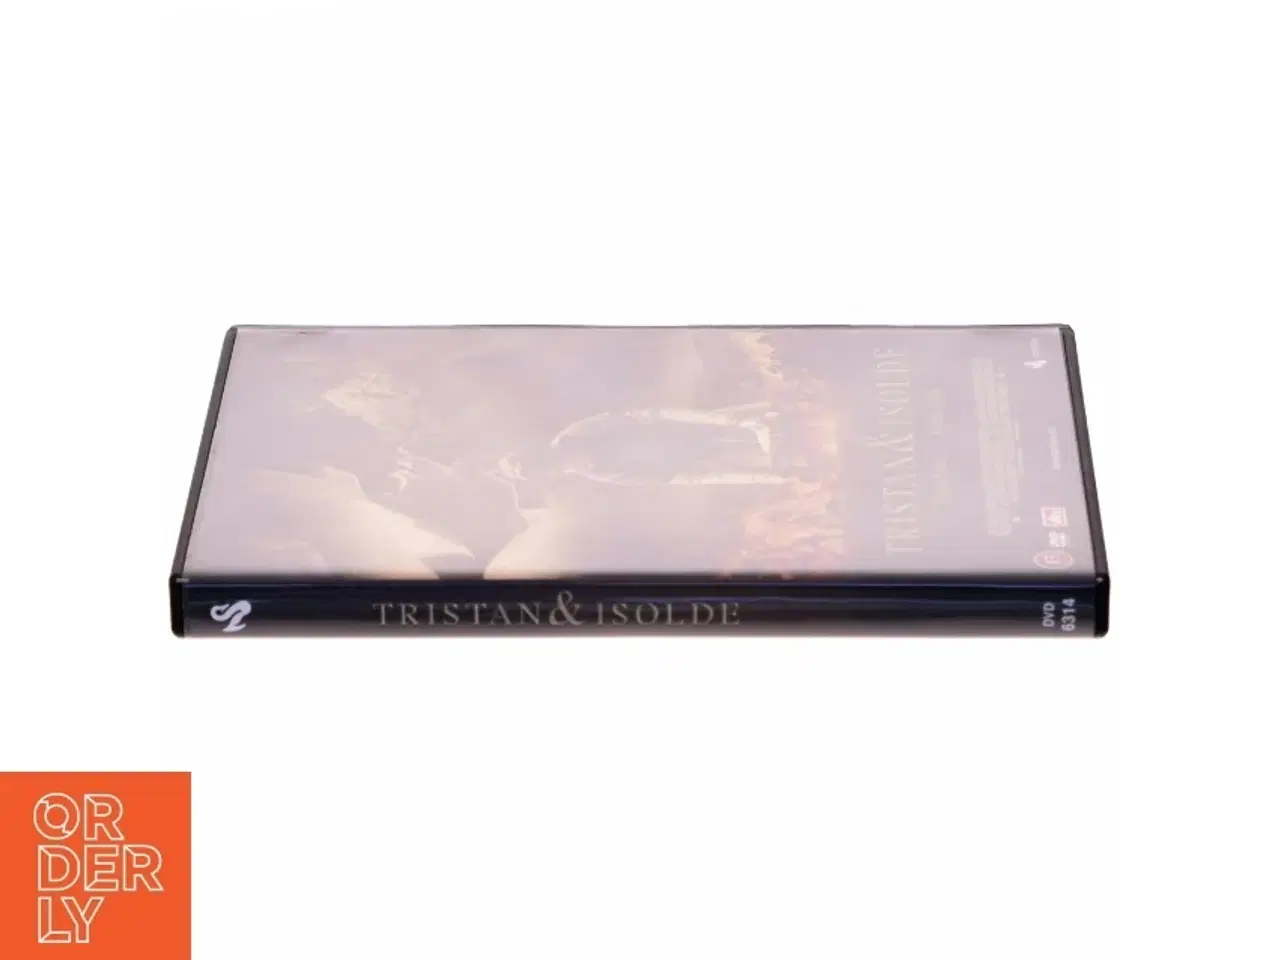 Billede 2 - Tristan & Isolde DVD fra Scanbox Entertainment